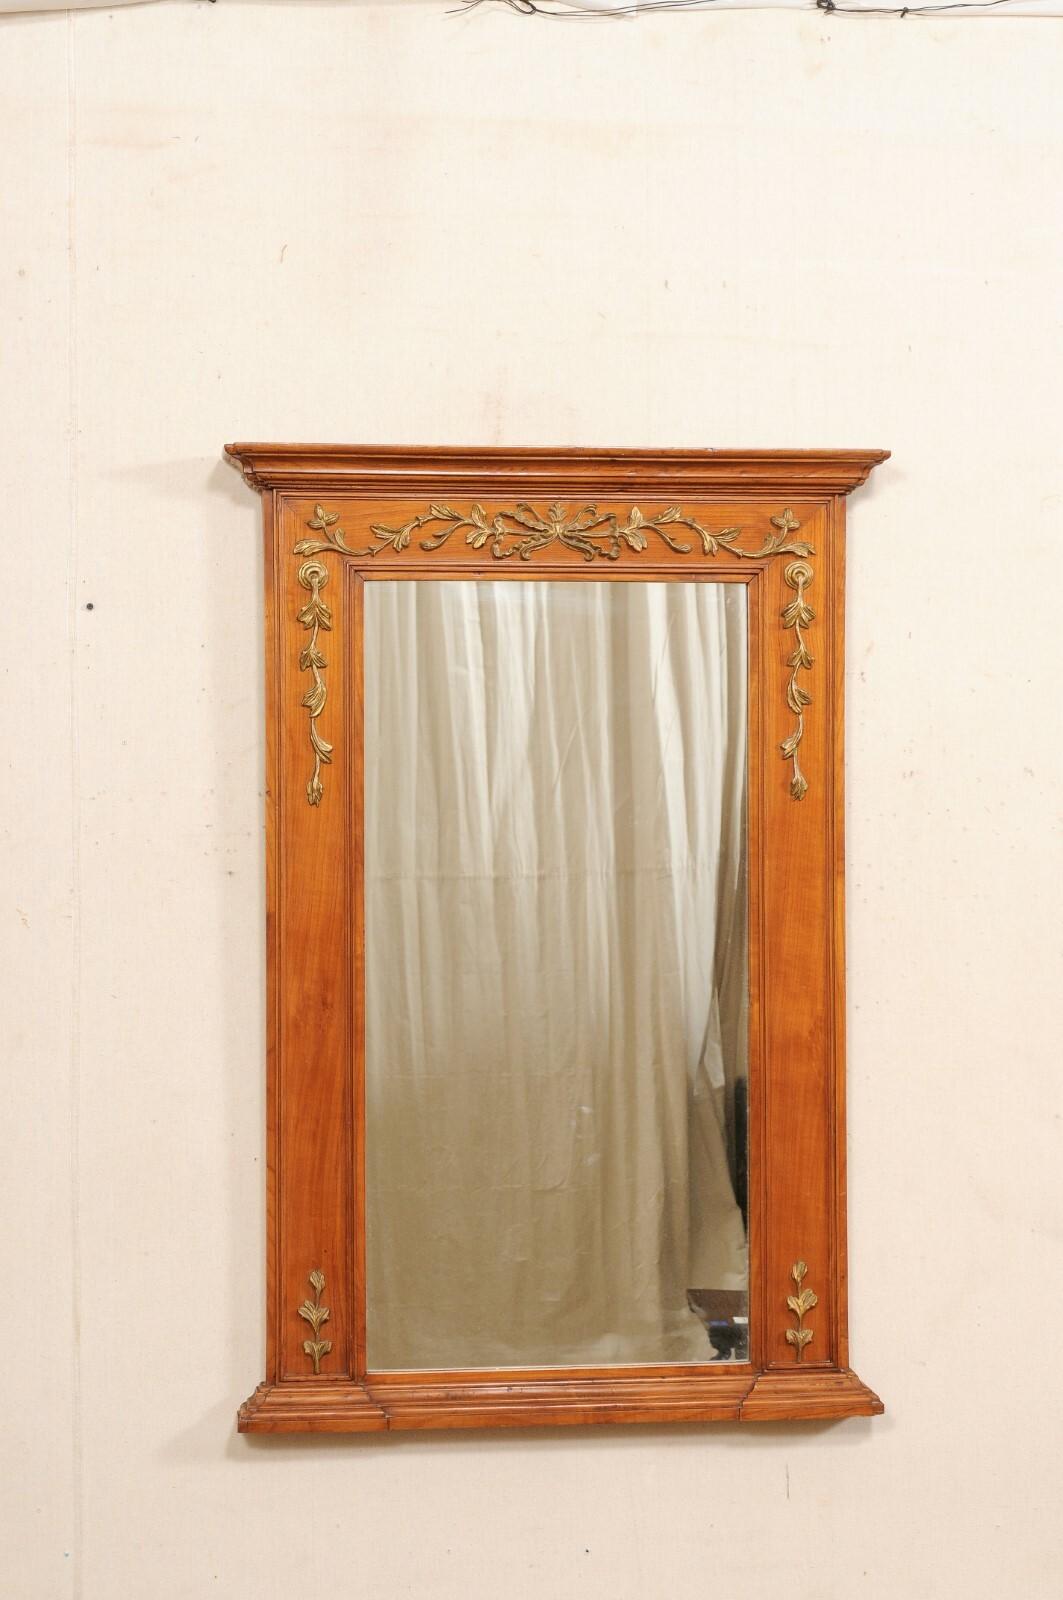 Miroir français en bois sculpté du début du 20e siècle. Ce miroir ancien de France mesure environ 1,5 mètre de haut. Il est de forme rectangulaire avec une corniche supérieure joliment moulurée, et des ornements de guirlande florale avec un nœud